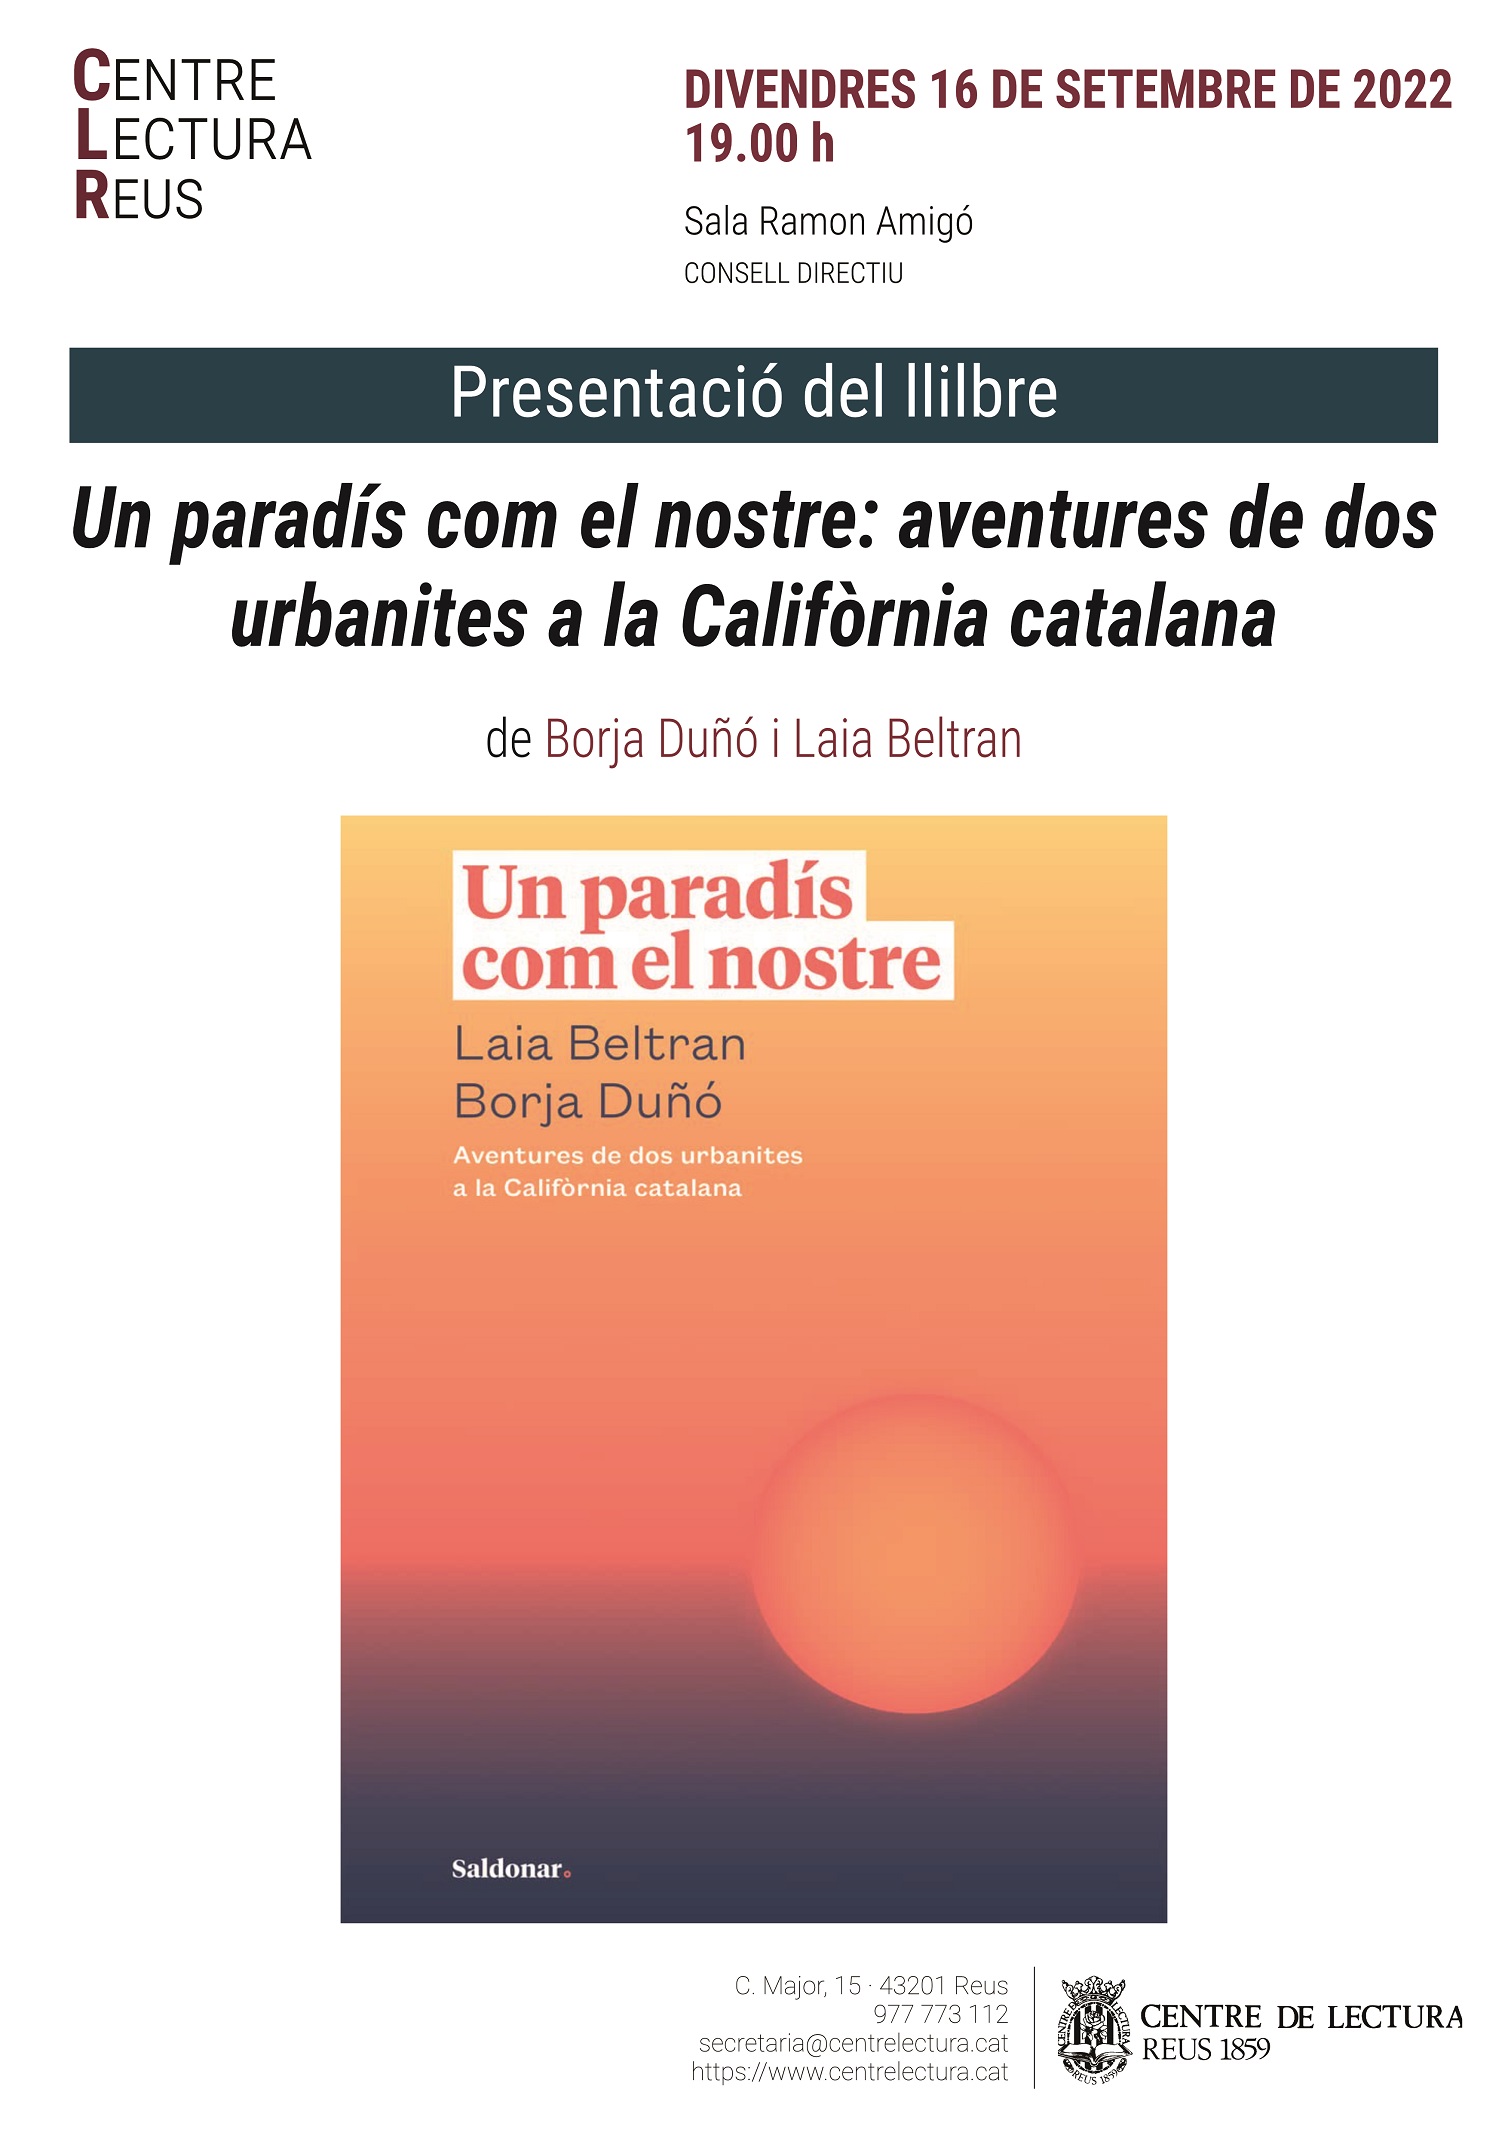 PRESENTACIÓ DEL LLIBRE "UN PARADÍS COM EL NOSTRE: AVENTURES DE DOS URBANITES A LA CALIFÒRNIA CATALANA"